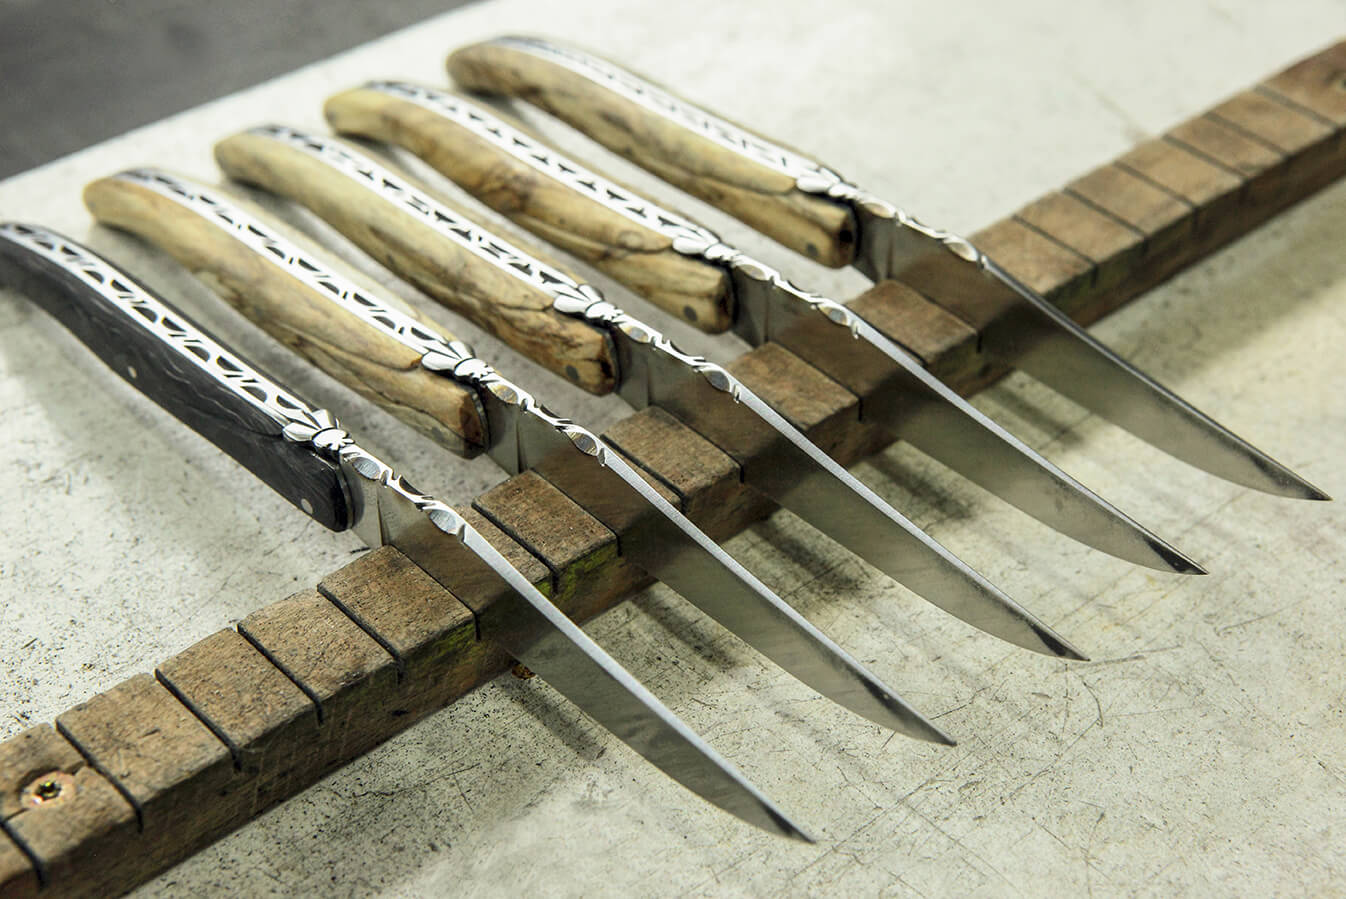 5 couteaux pliants en bois posés sur une planche en bois